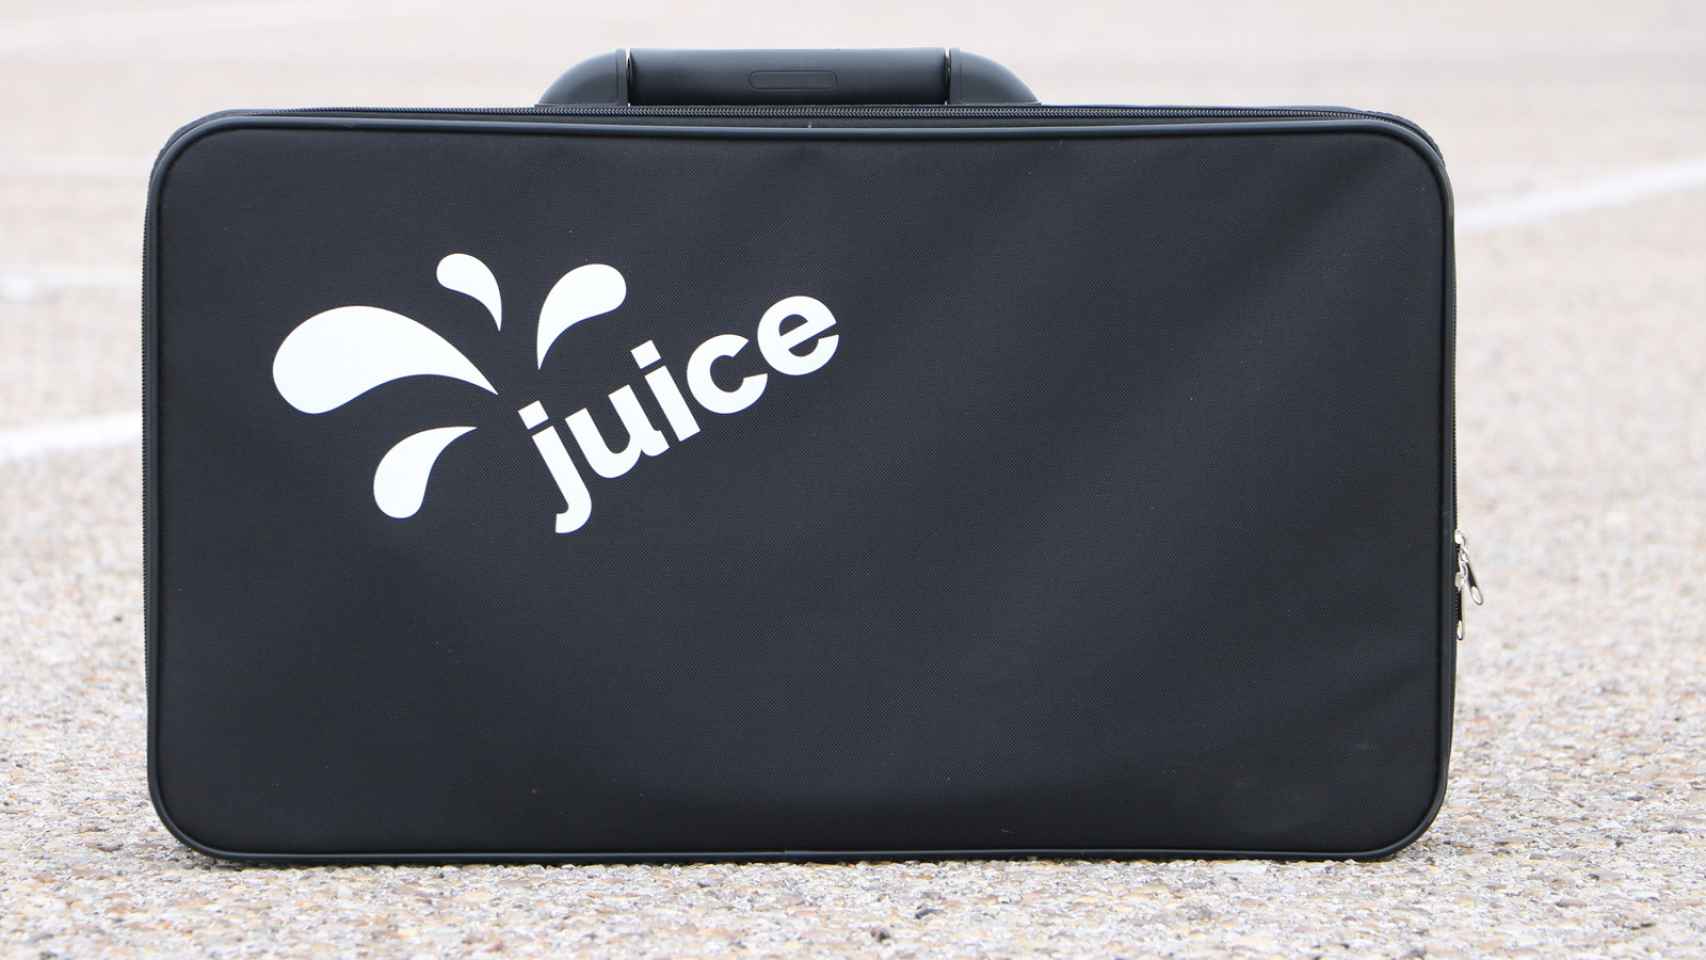 Imagen del Juice Booster 2 recogido dentro del maletín.